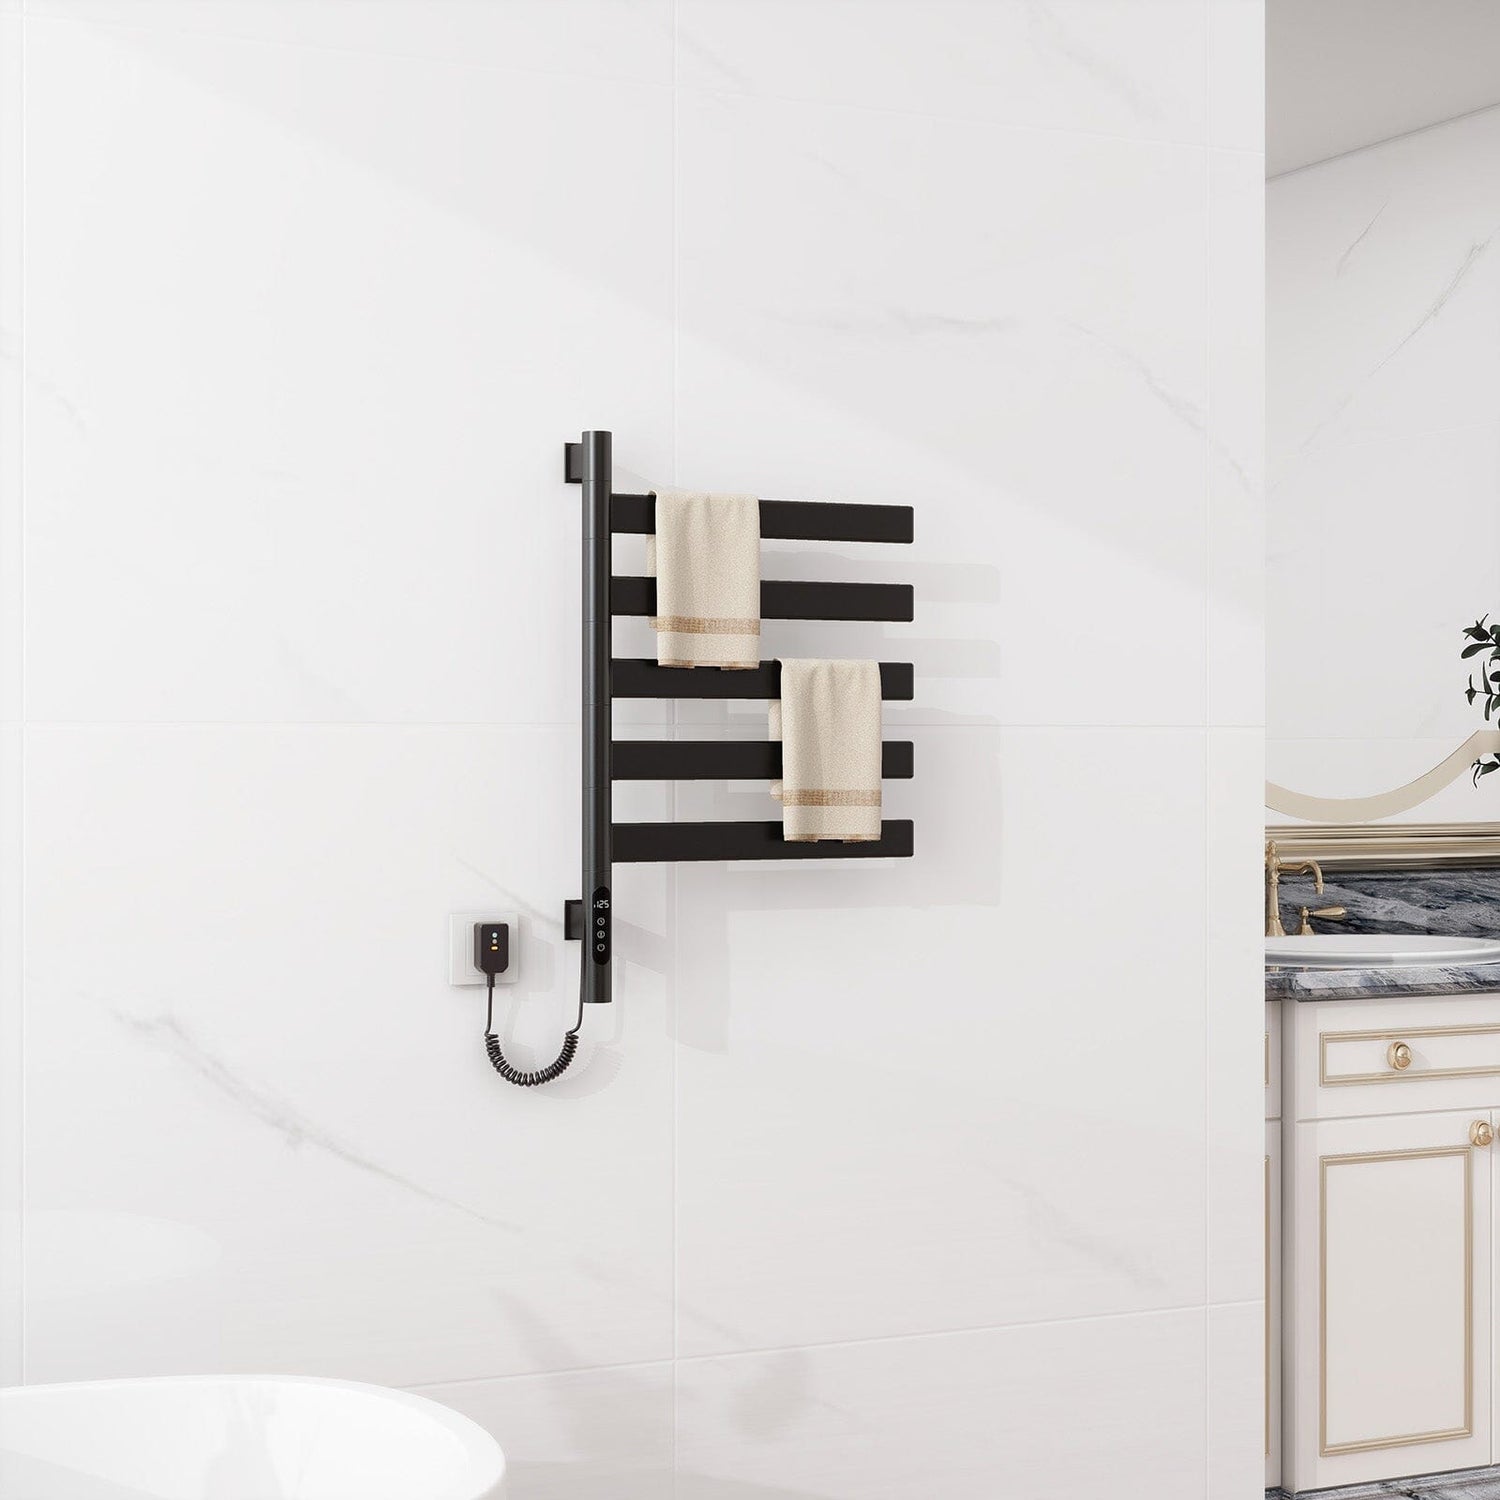 Heated Towel Racks for Bathroom, 180° Rotating Wall Mounted Towel Warmer with Flat 5 Bar